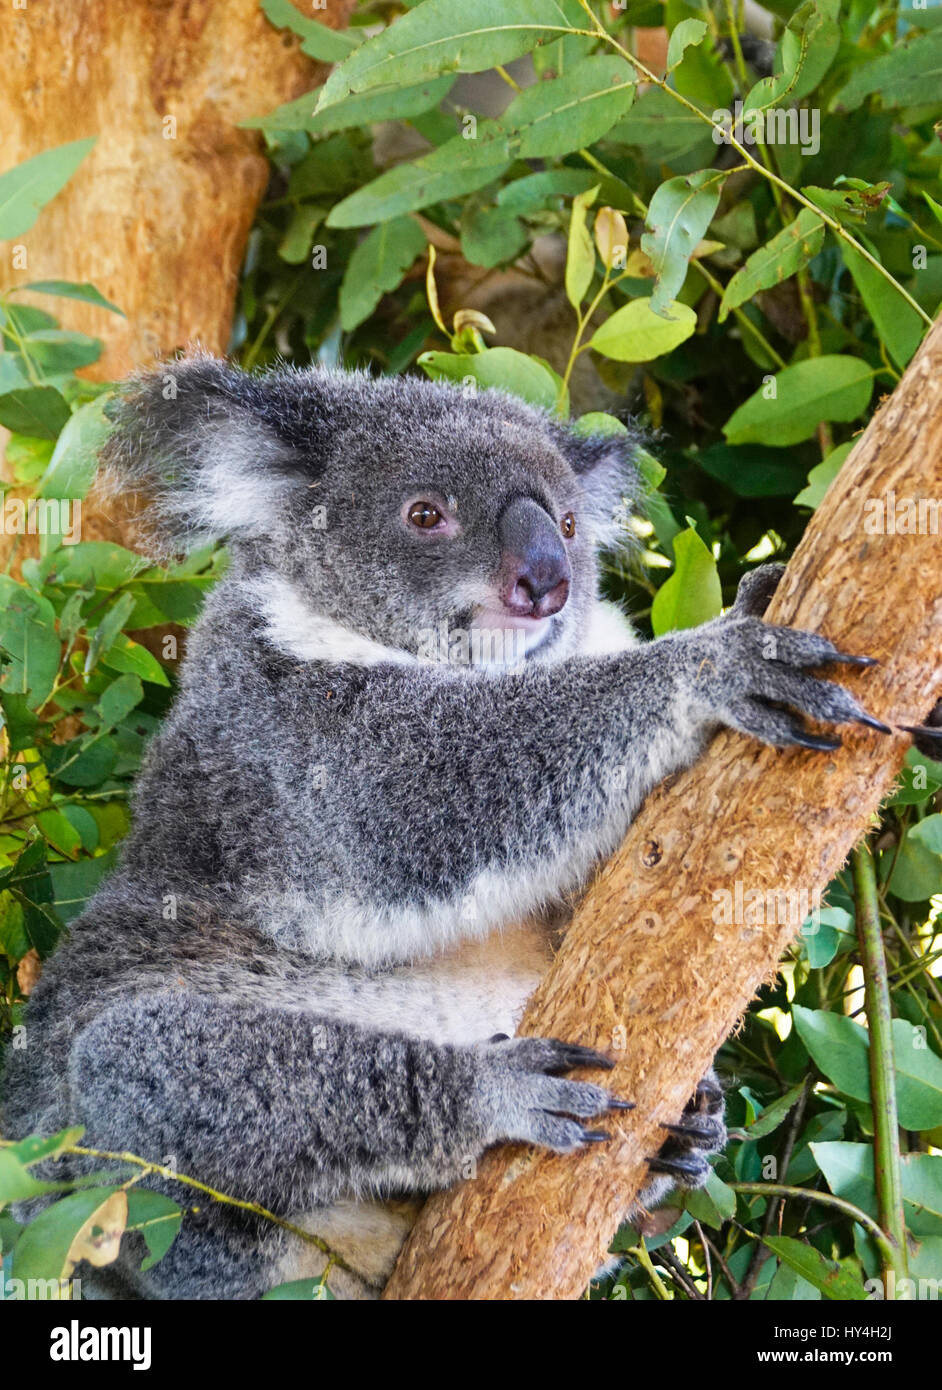 Australian koala. Stock Photo